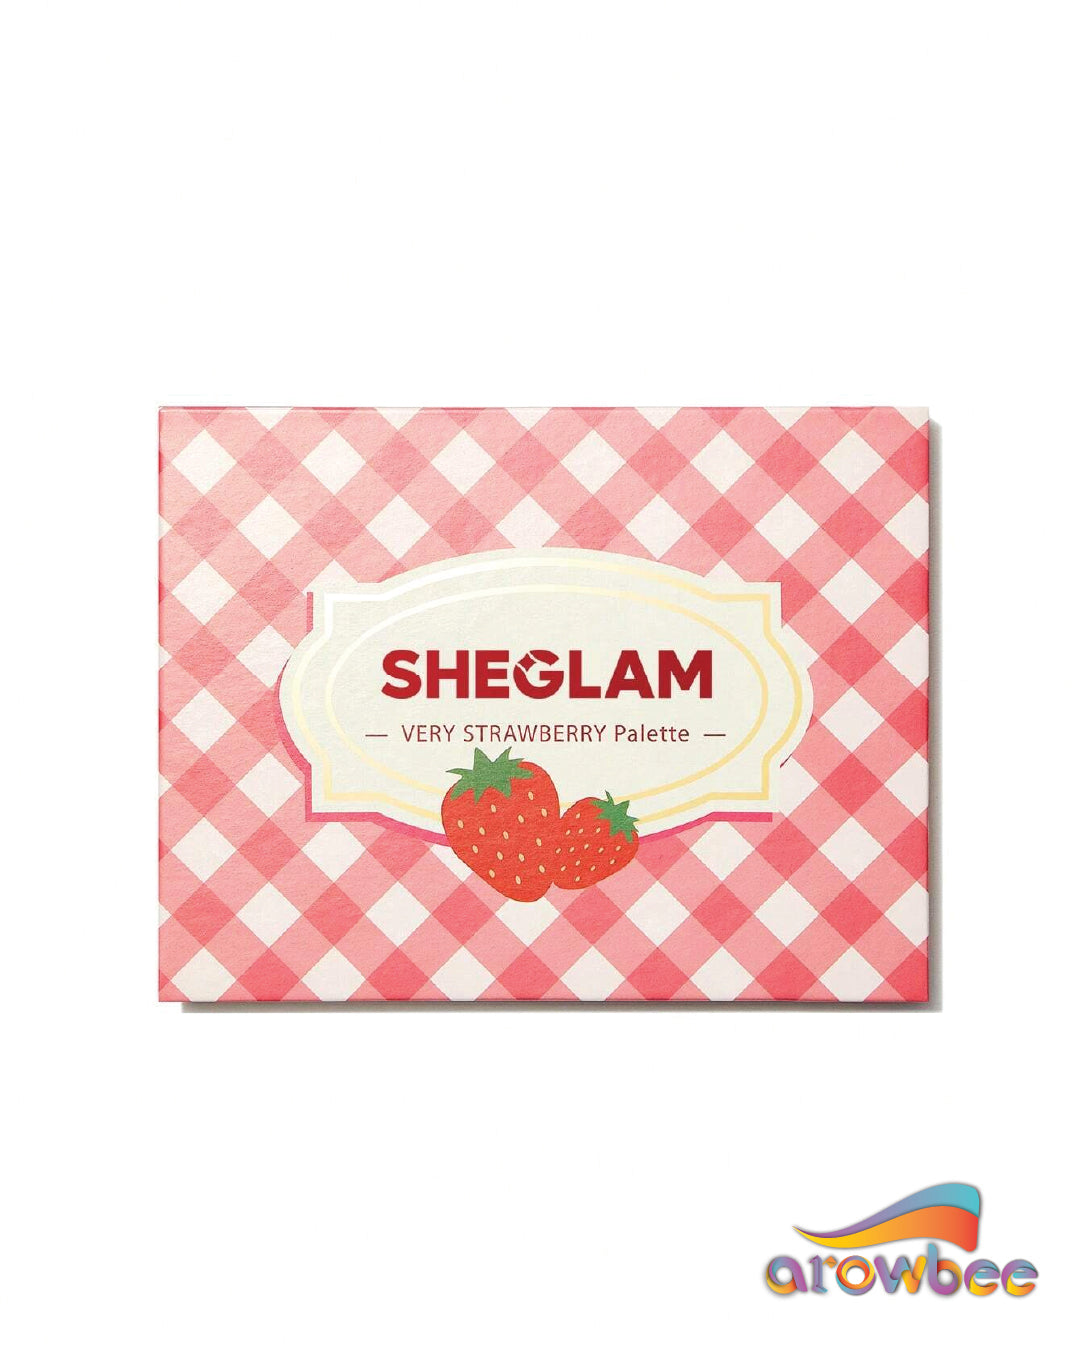 SHEGLAM Very Strawberry Palette